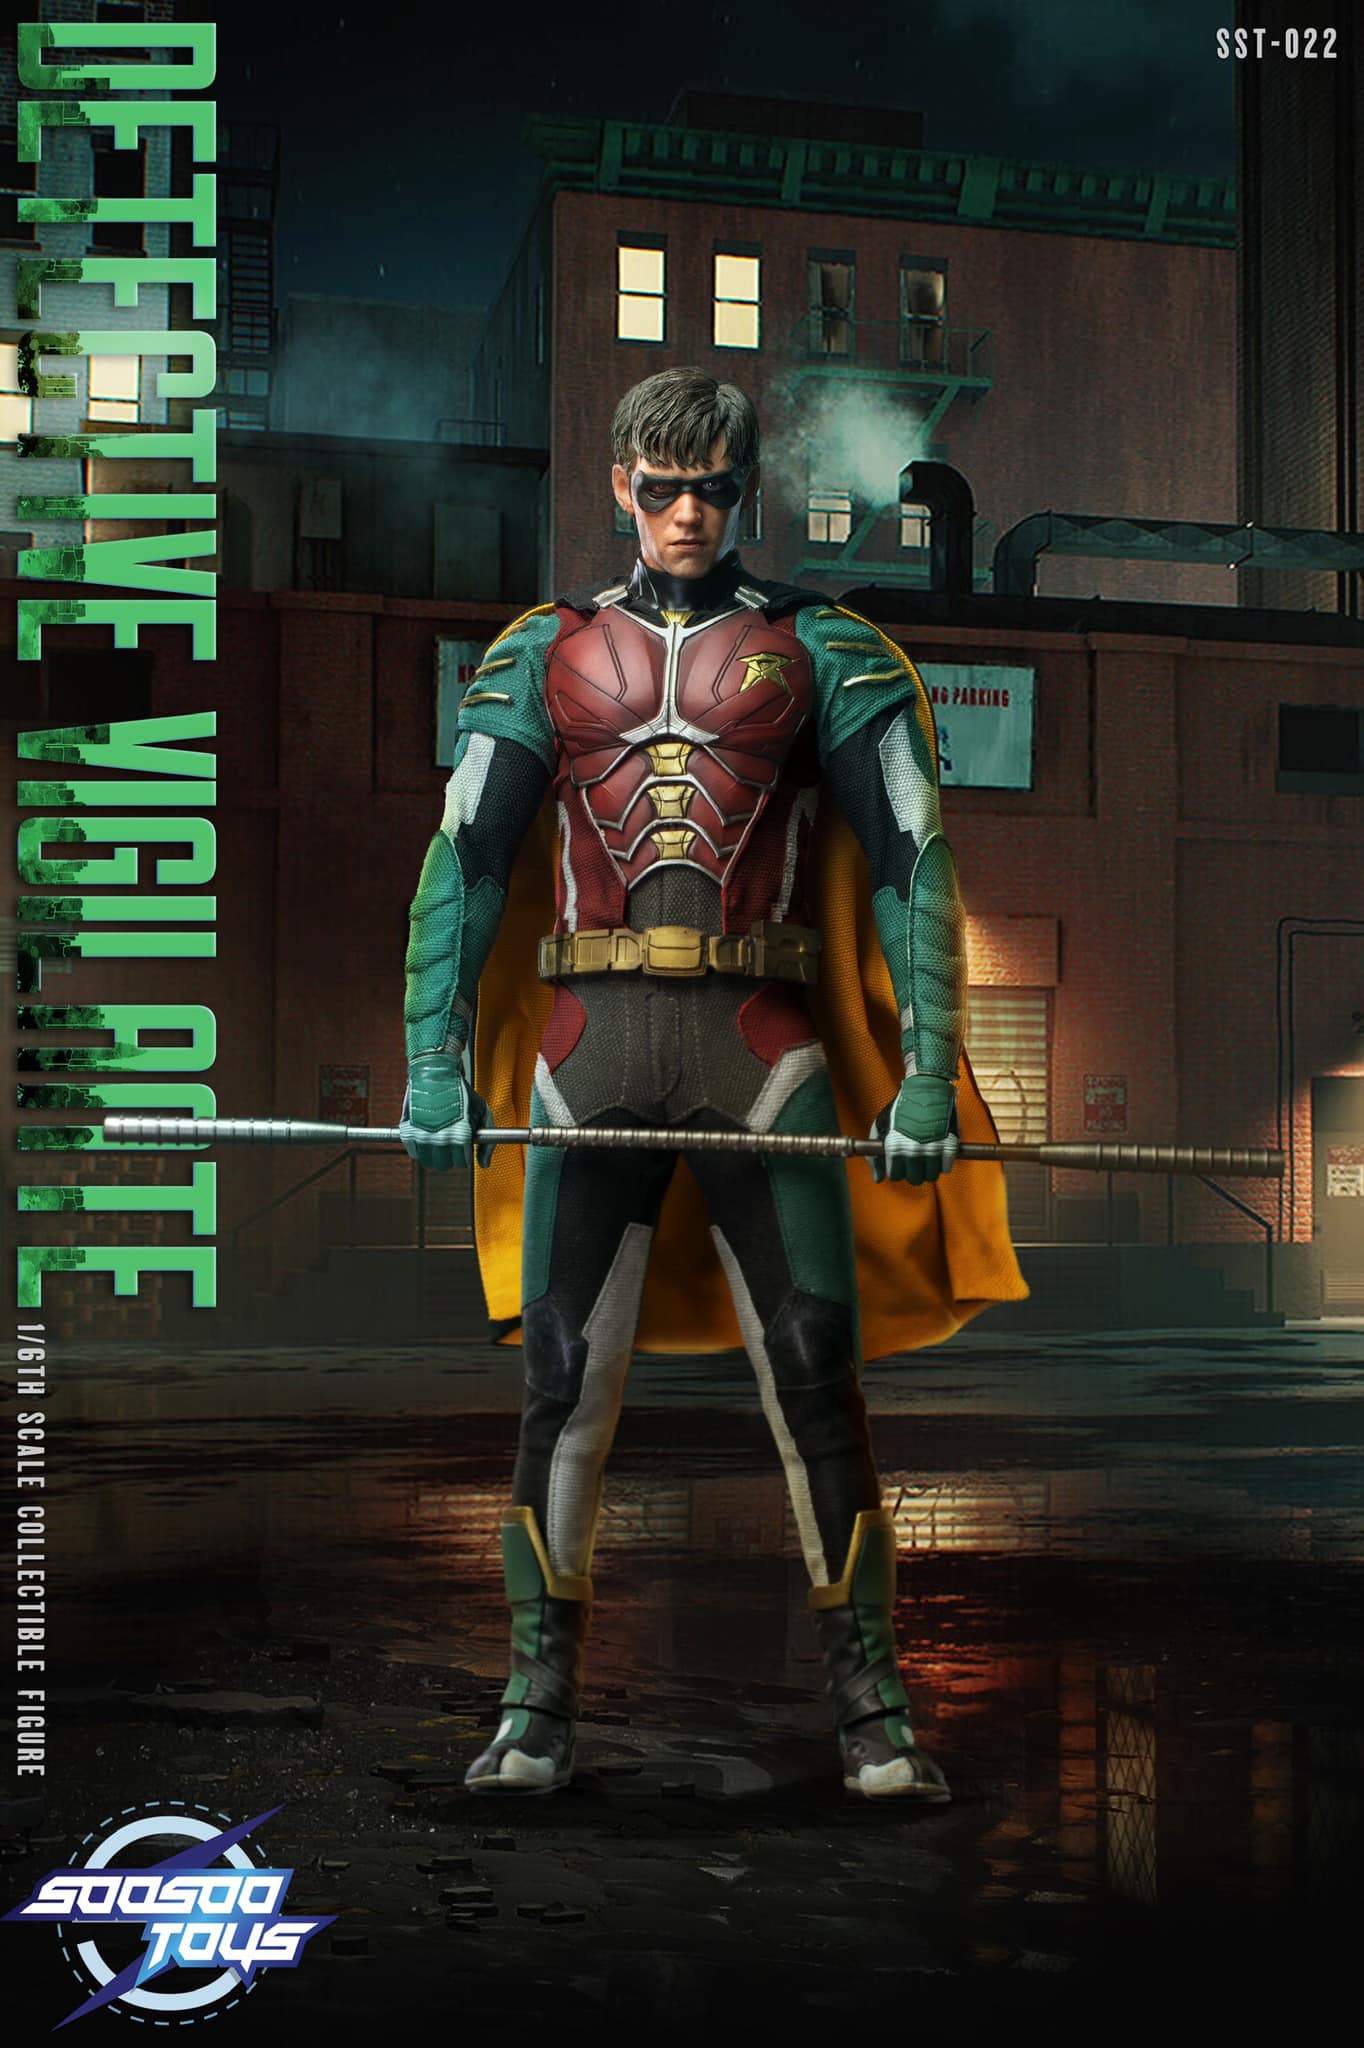 New (unofficial) Robin #Titans S1 figure Detective Vigilante 1:6 scale - Ho...